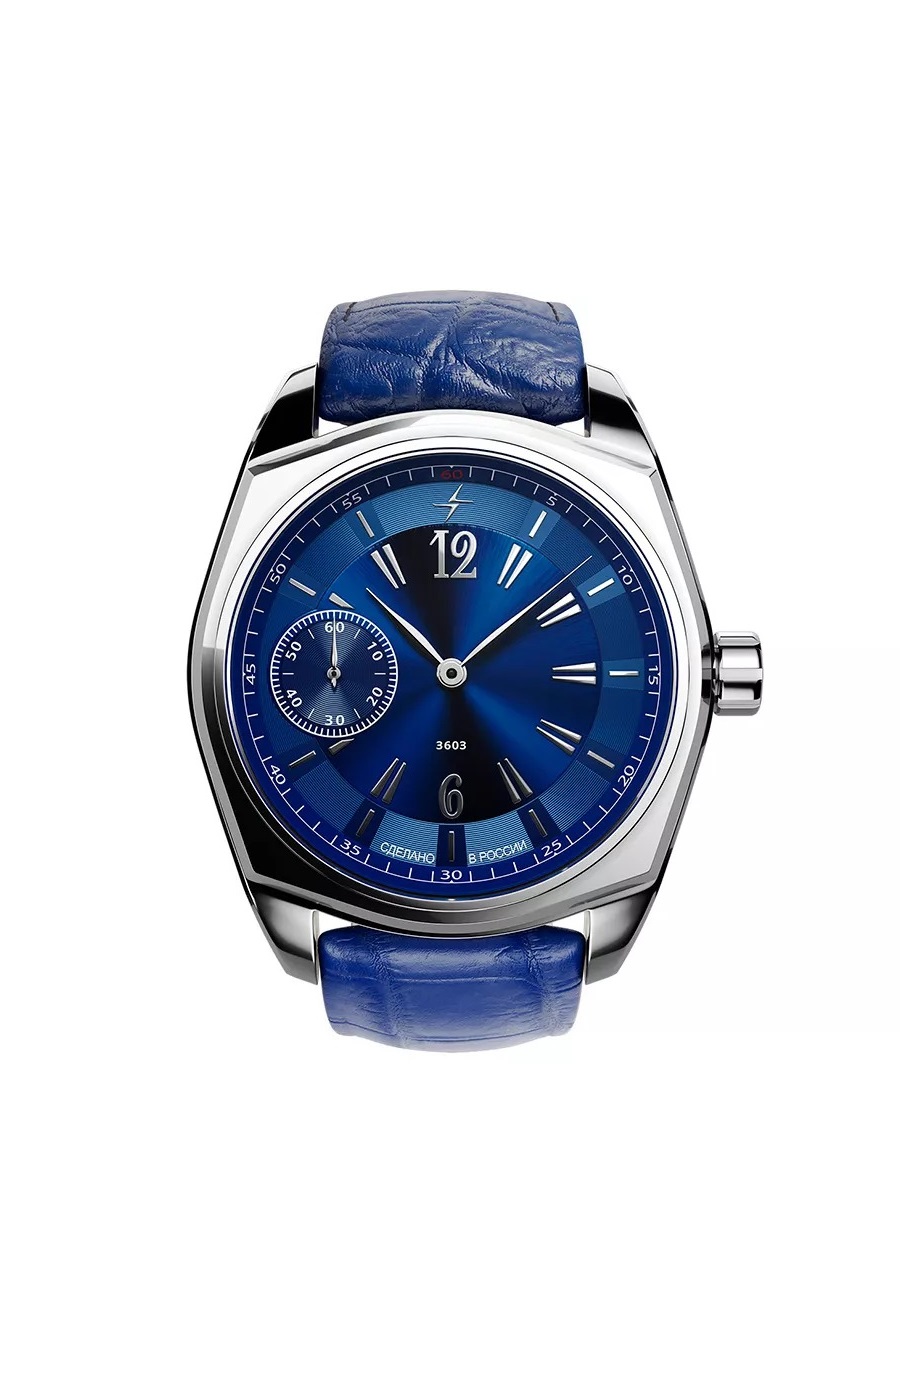 Наручные часы мужские Молния 0110102 синие